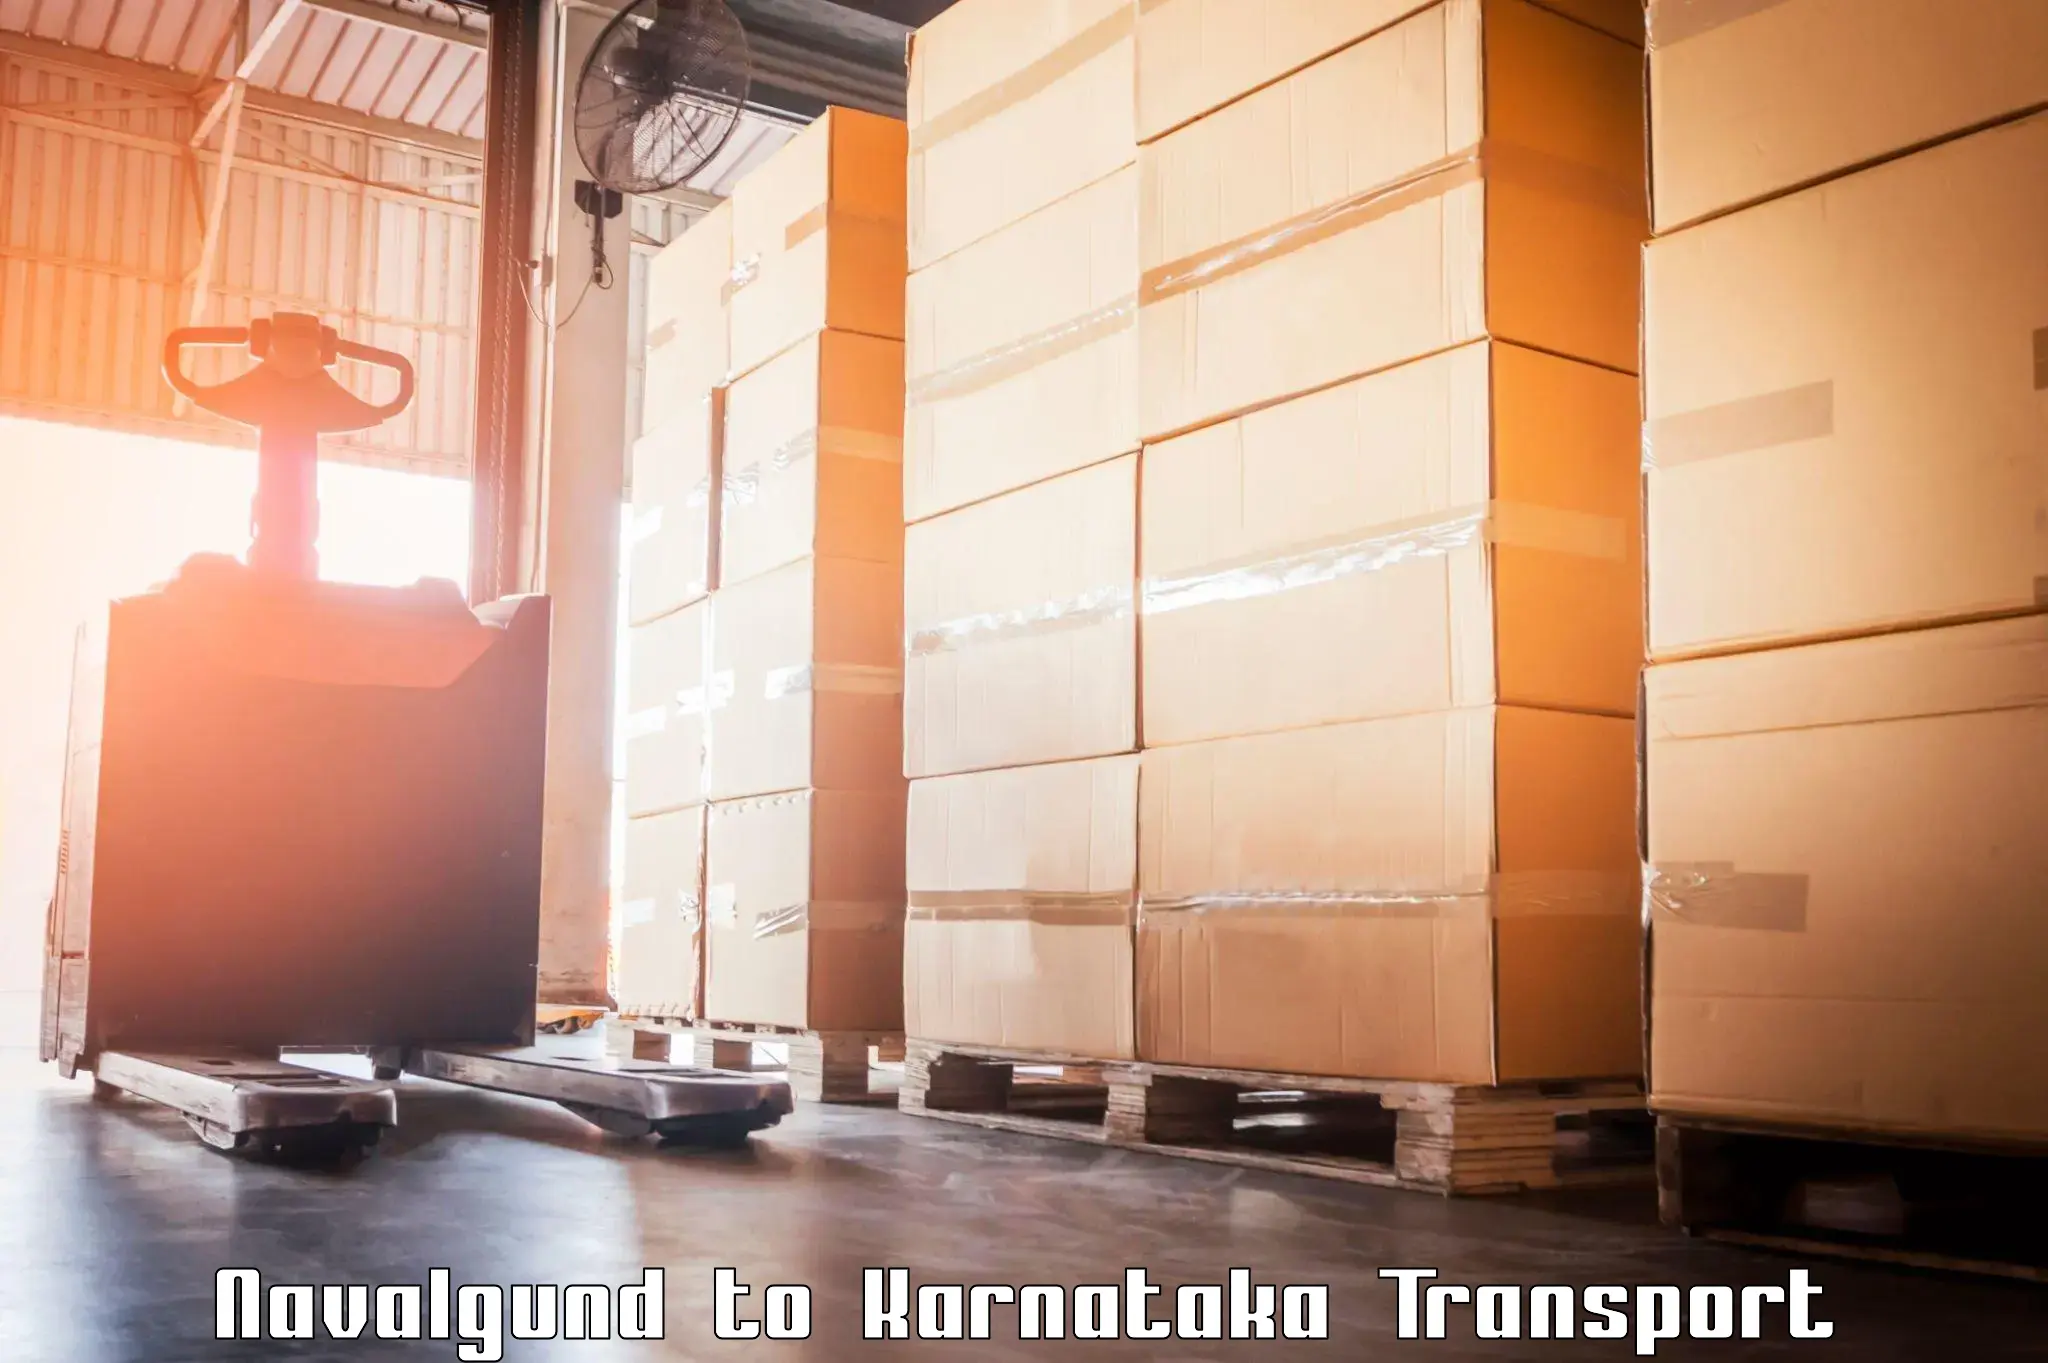 Container transportation services Navalgund to Yadgiri